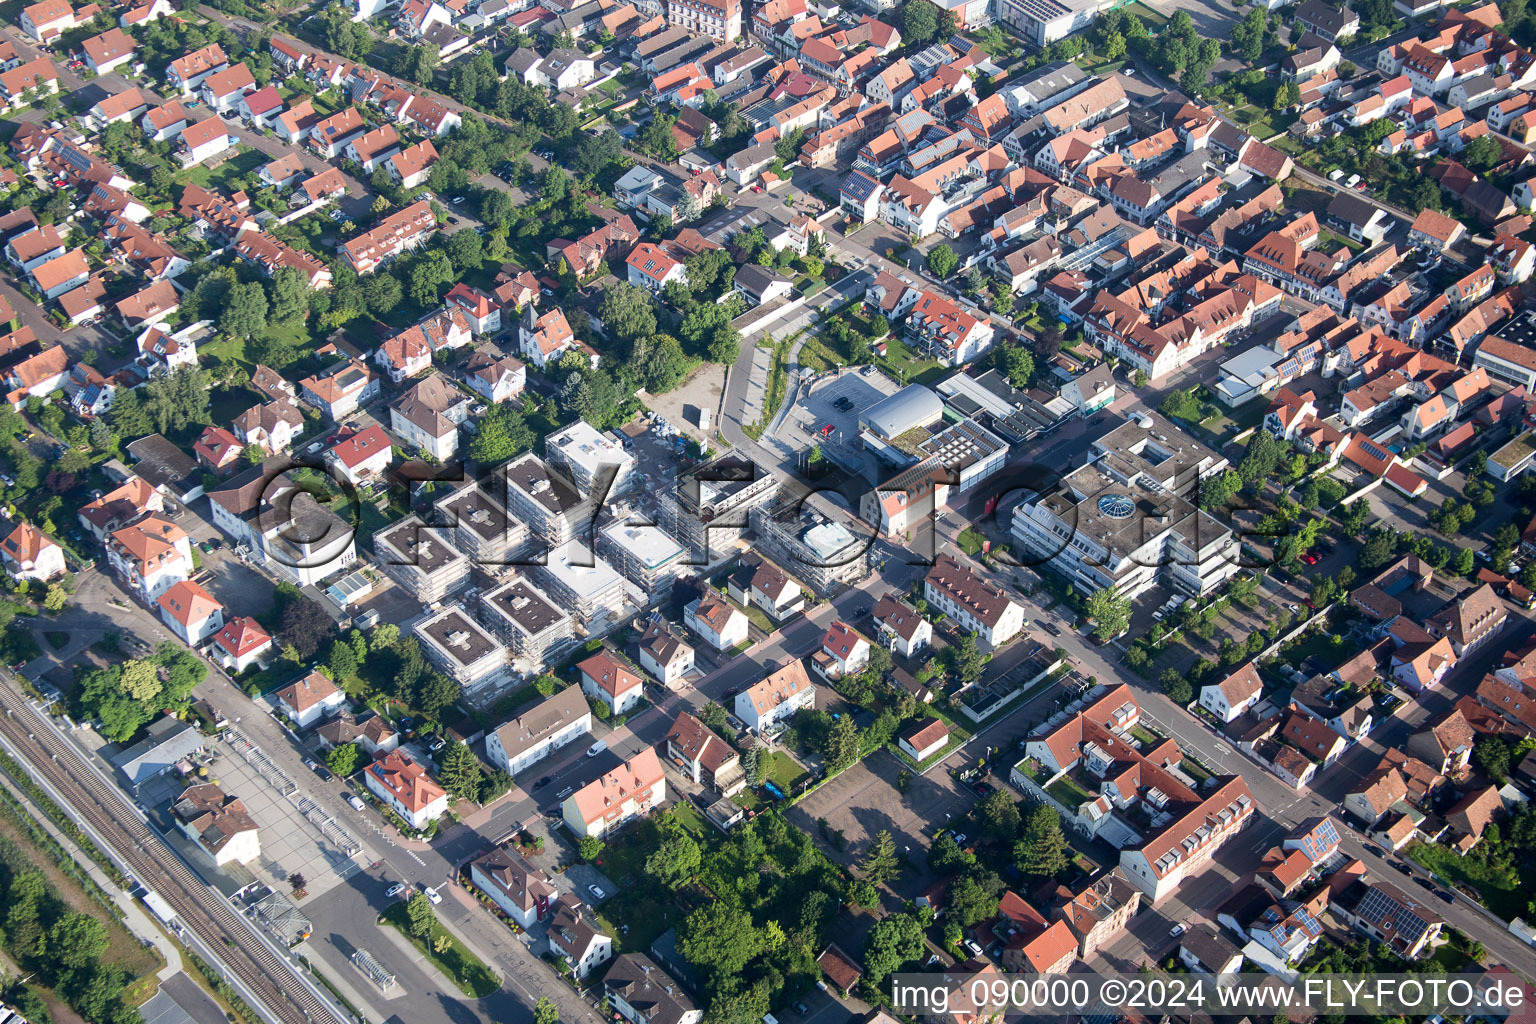 Luftbild von "Im Stadkern" Neubau der RiBa GmbH zw. Bismarck- und Gartenstr in Kandel im Bundesland Rheinland-Pfalz, Deutschland